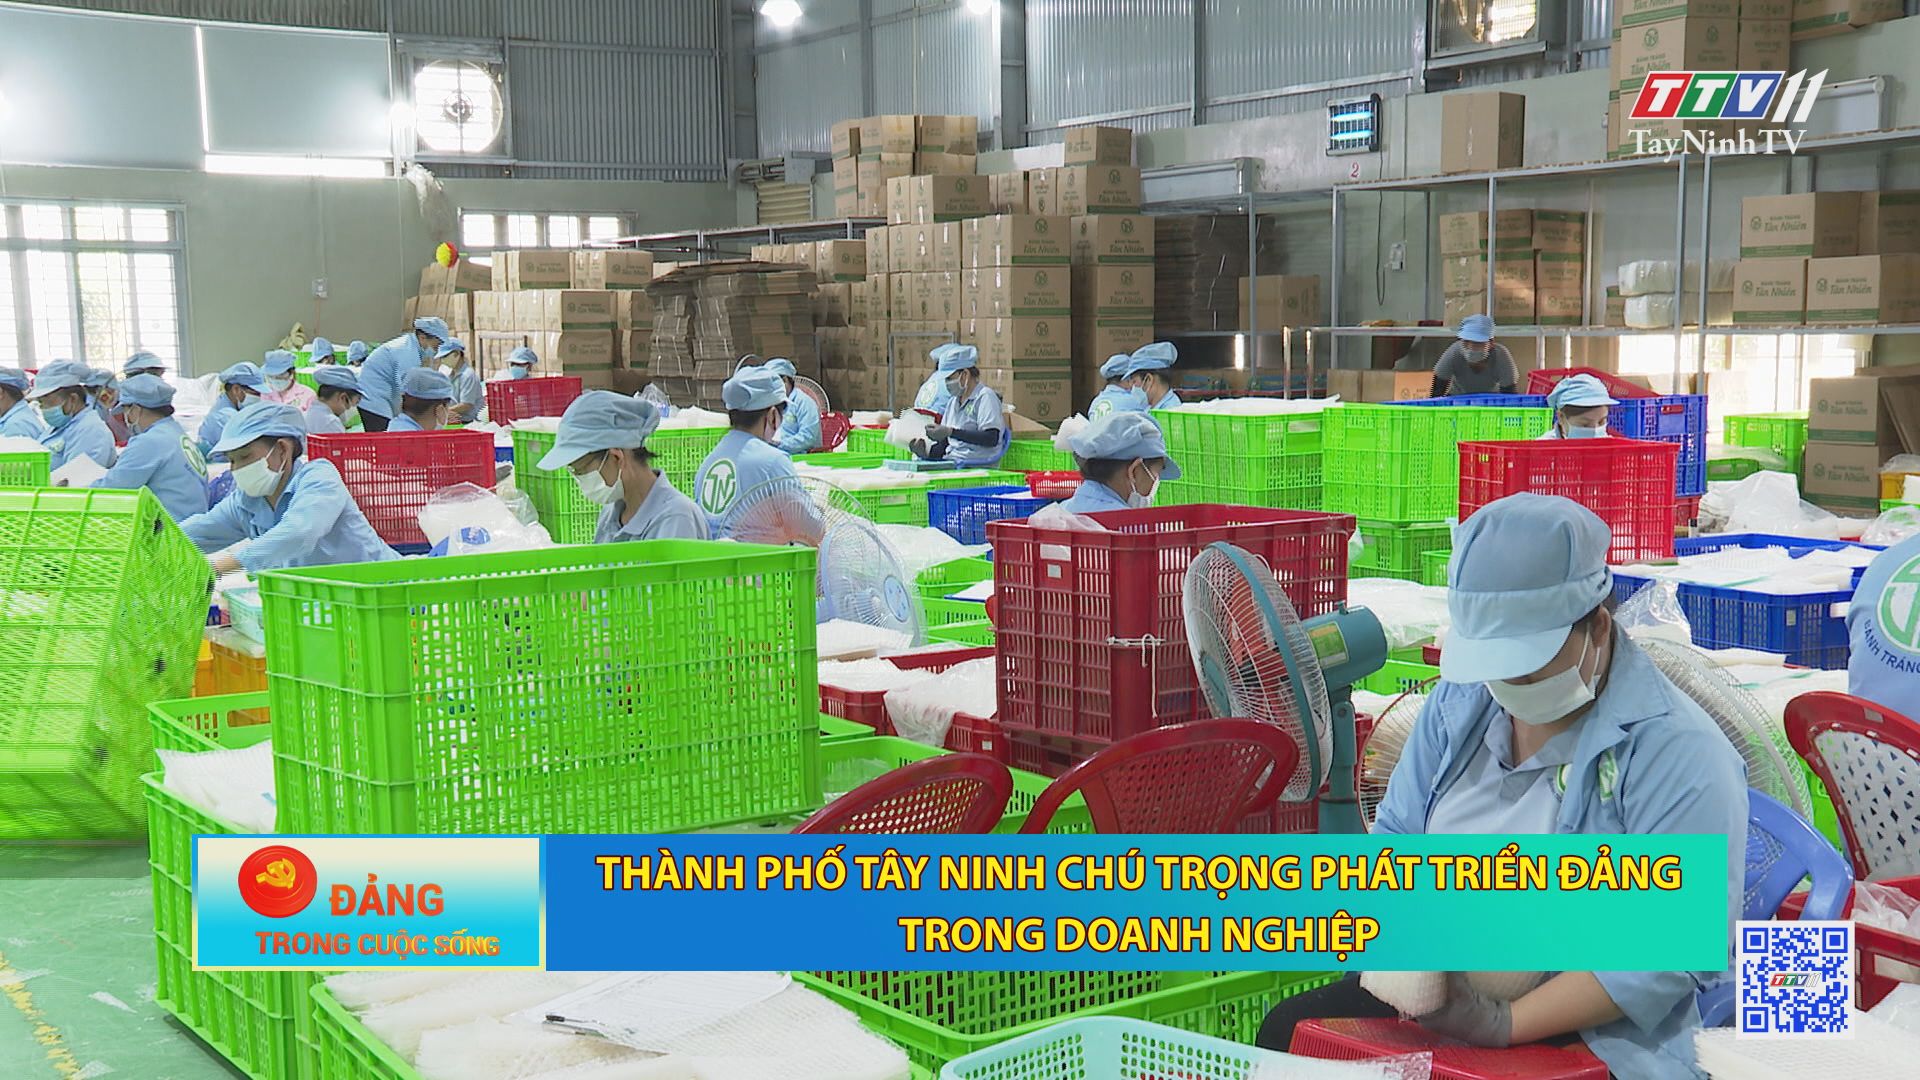 Thành phố Tây Ninh chú trọng phát triển đảng trong doanh nghiệp | ĐẢNG TRONG CUỘC SỐNG | TayNinhTV